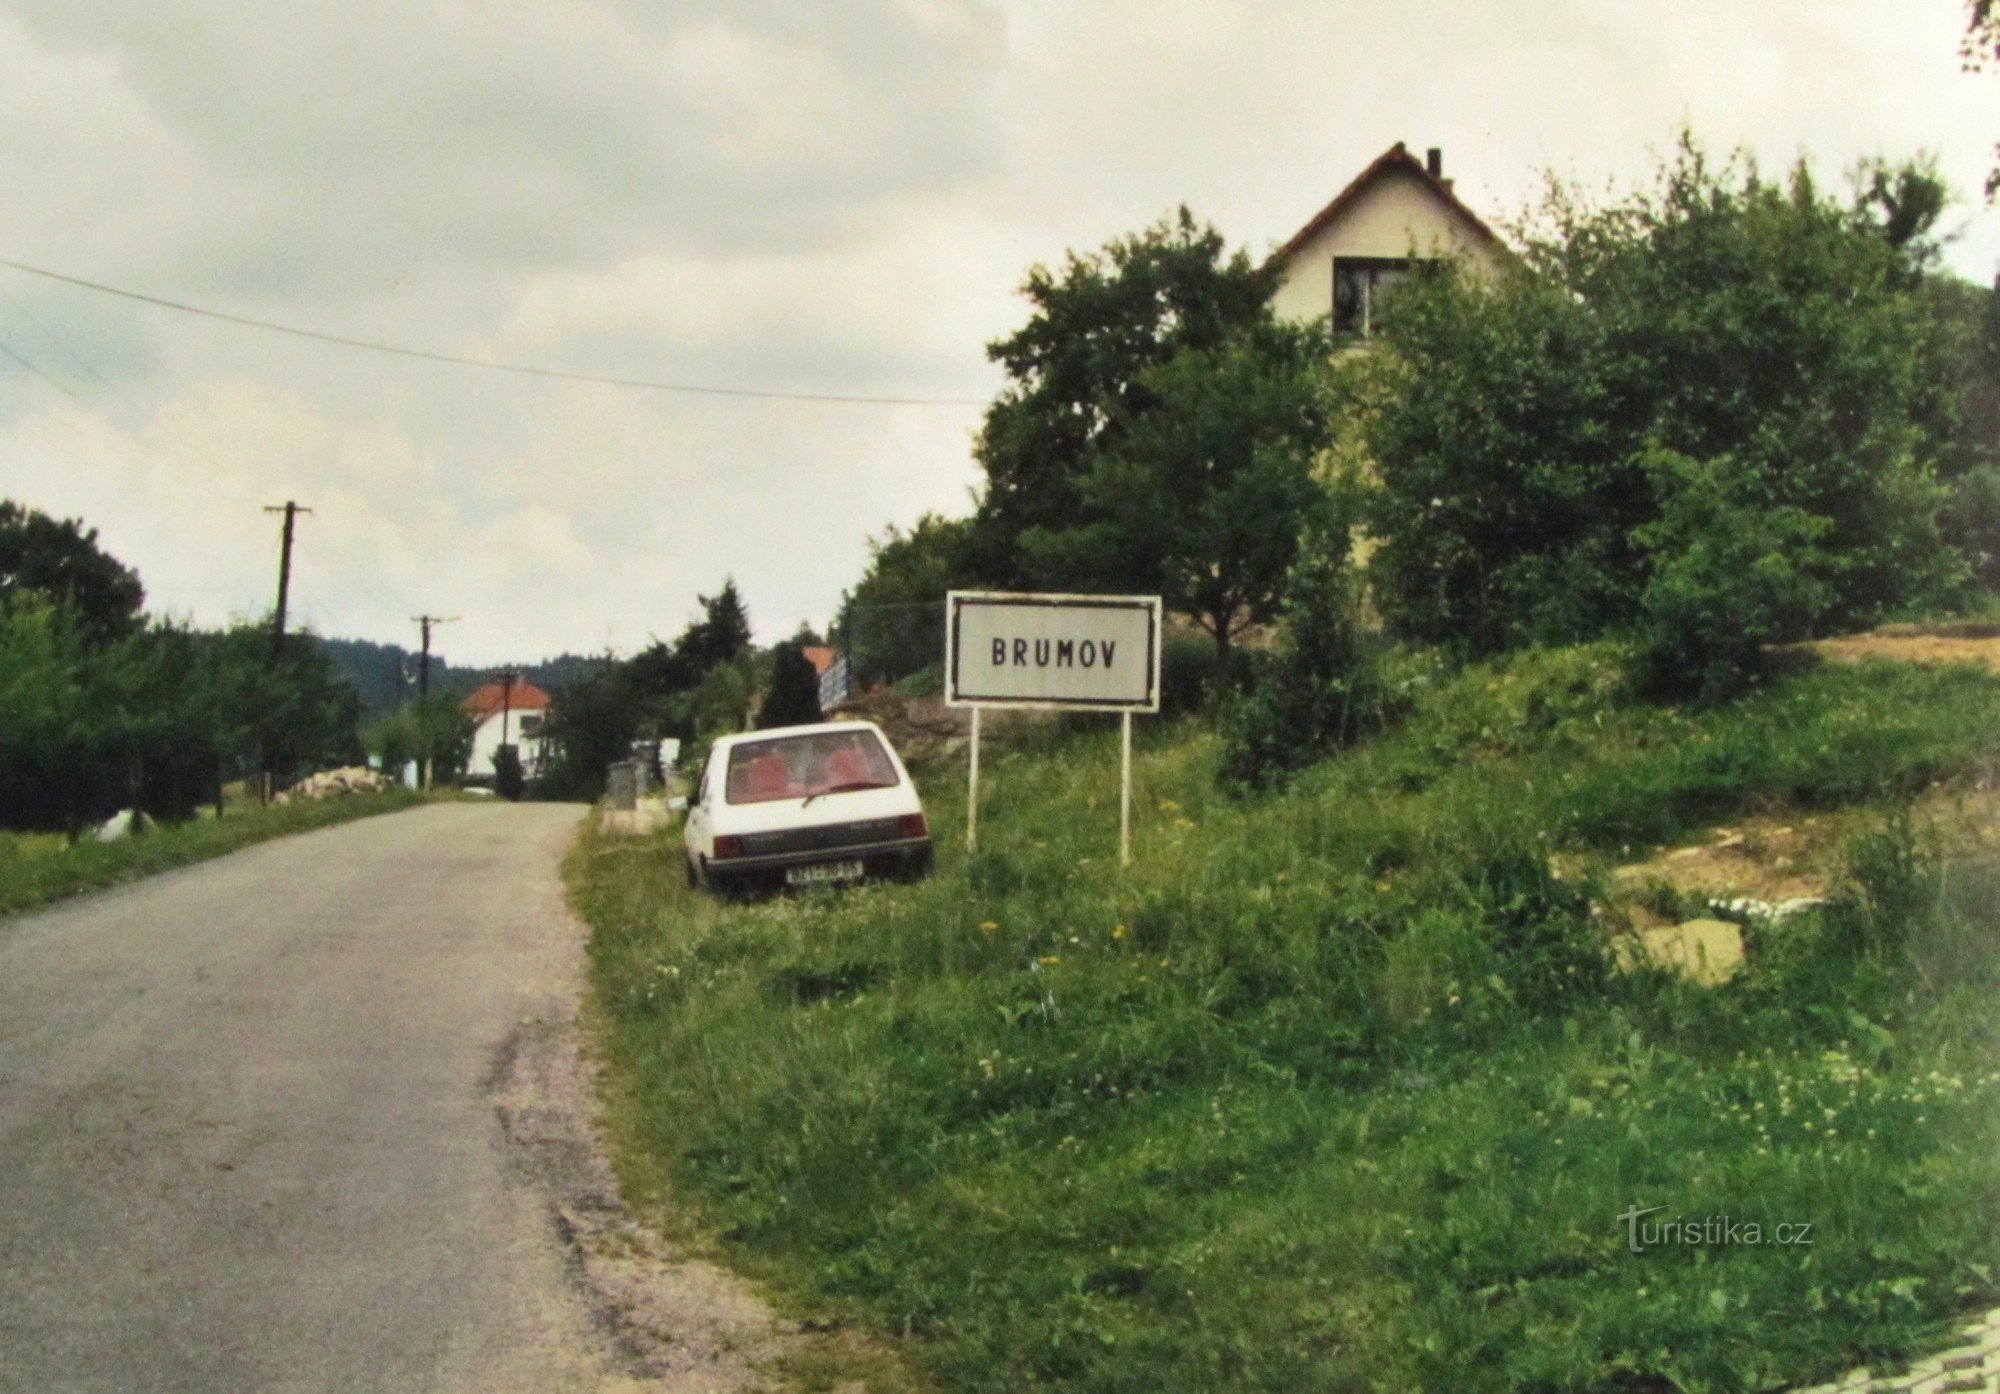 Potovanje v visokogorje - 3. Od Lysice do Brumov, Osik, Synalova in do Sýkoř - retro 2001